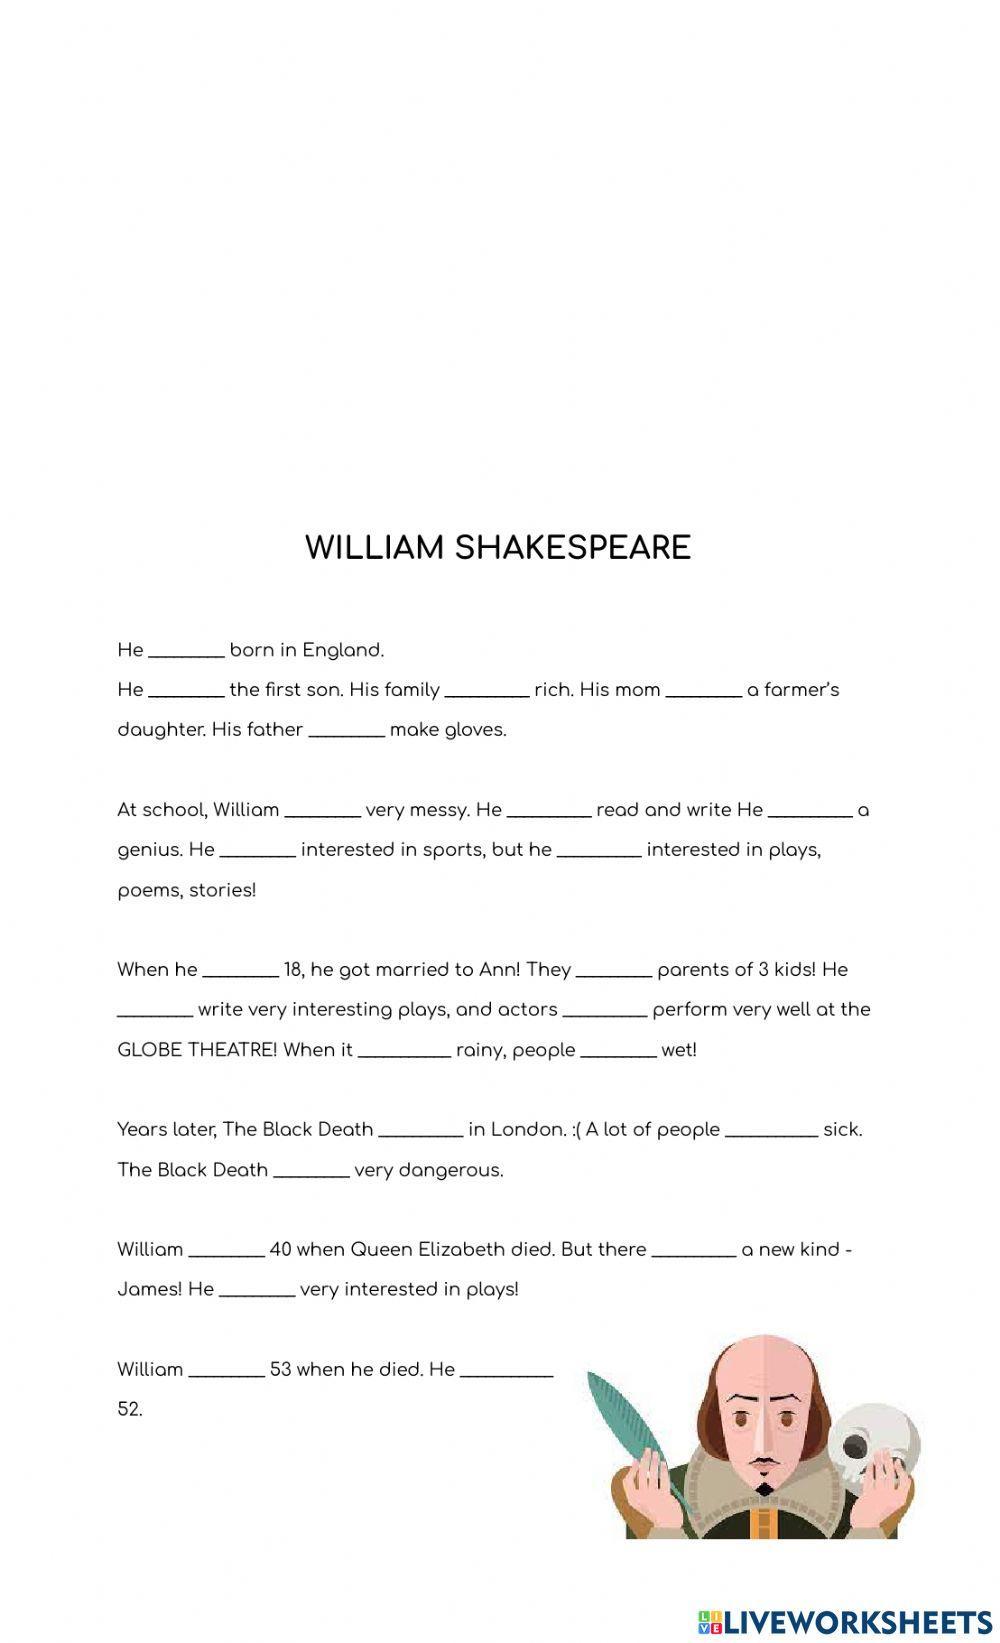 William shakespeare bio